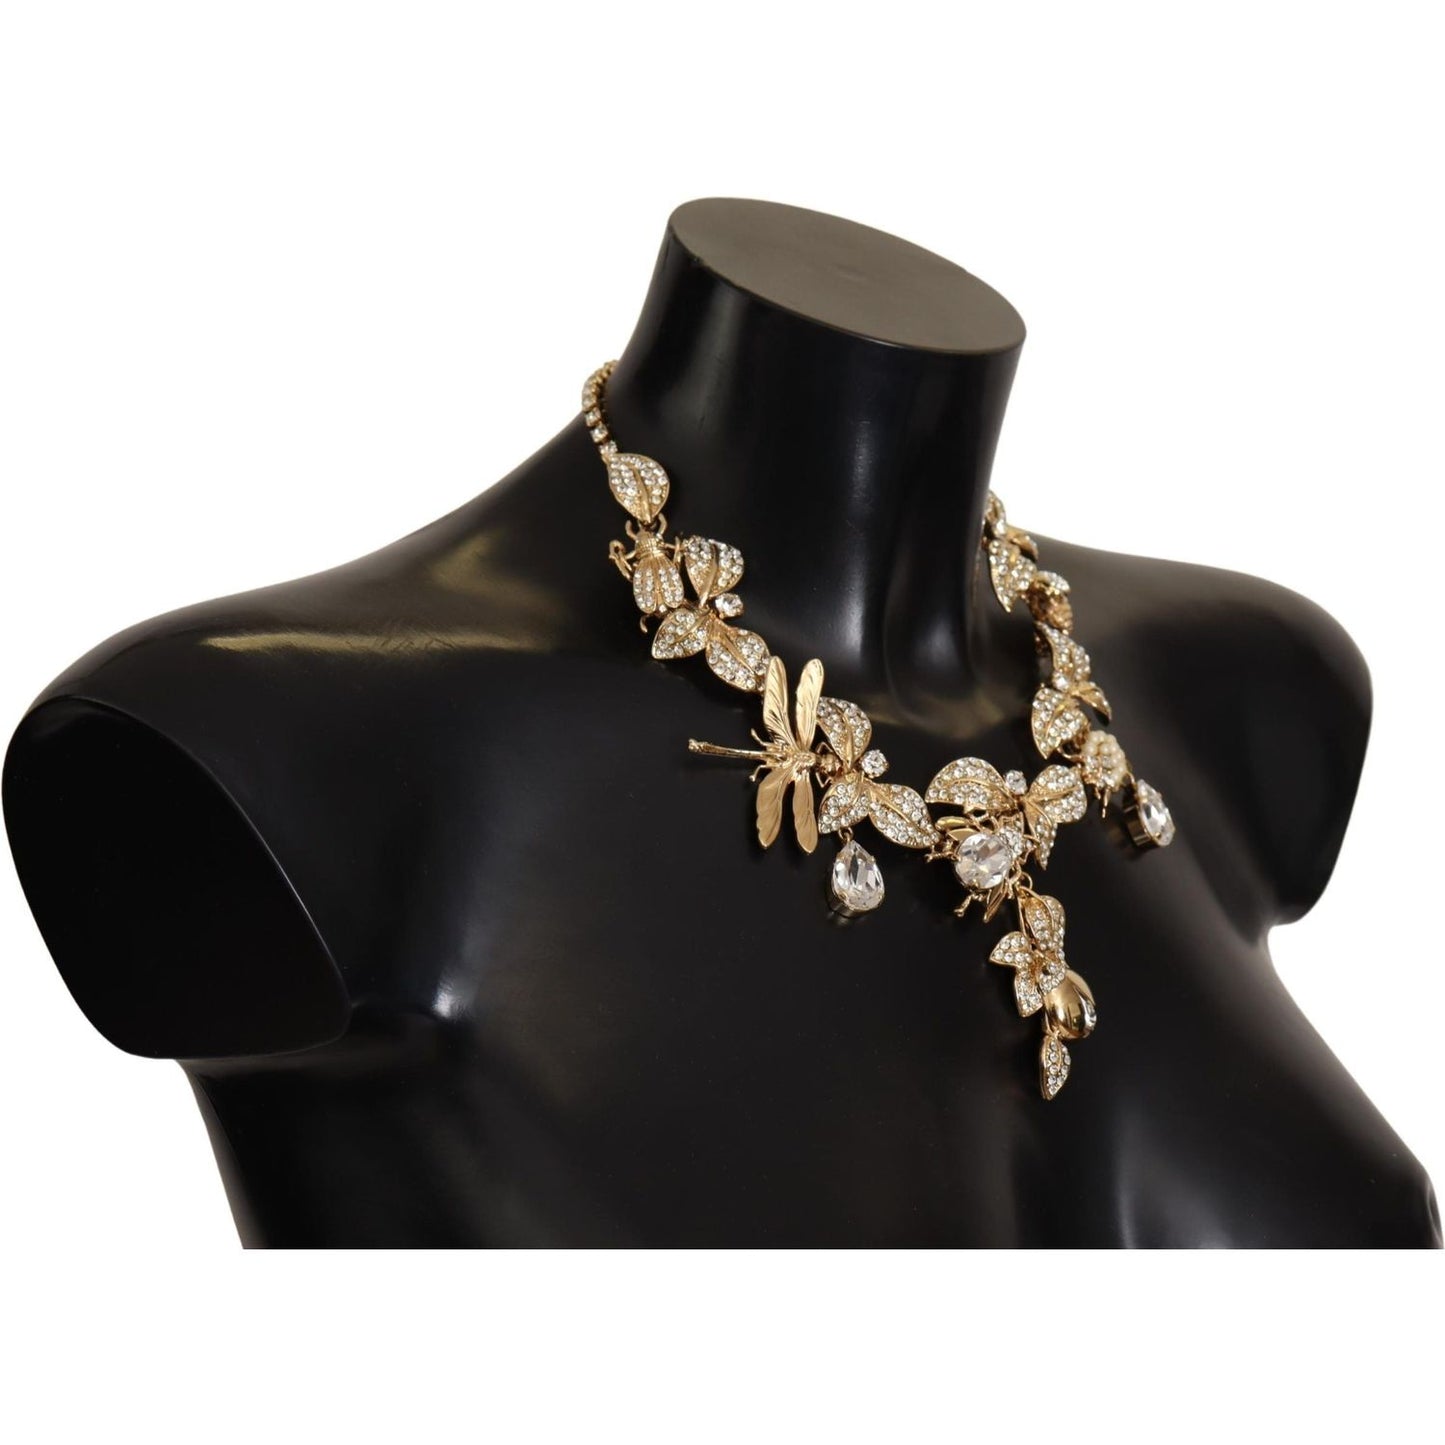 Dolce & Gabbana Elegant Sicily Floral Bug Statement Necklace gold-brass-floral-sicily-crystal-statement-necklace WOMAN NECKLACE IMG_1864-scaled-9948db85-de4.jpg